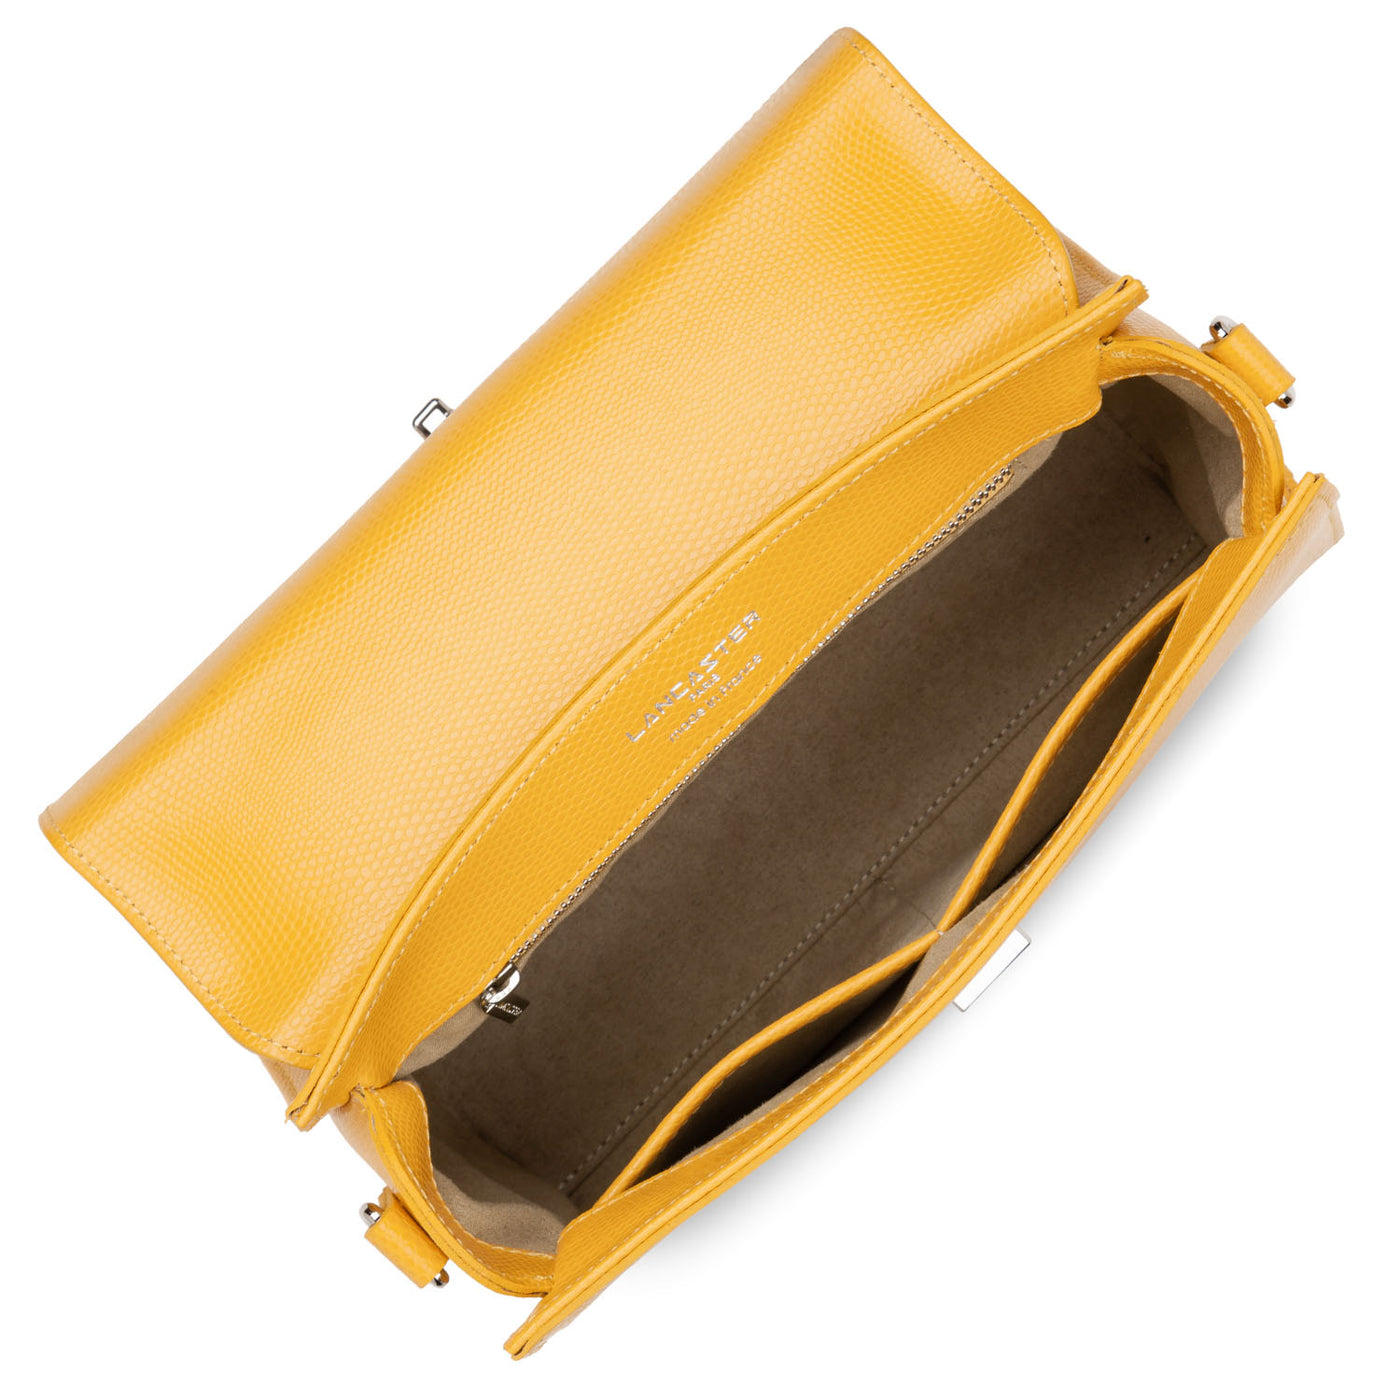 sac à main - lucertola #couleur_jaune